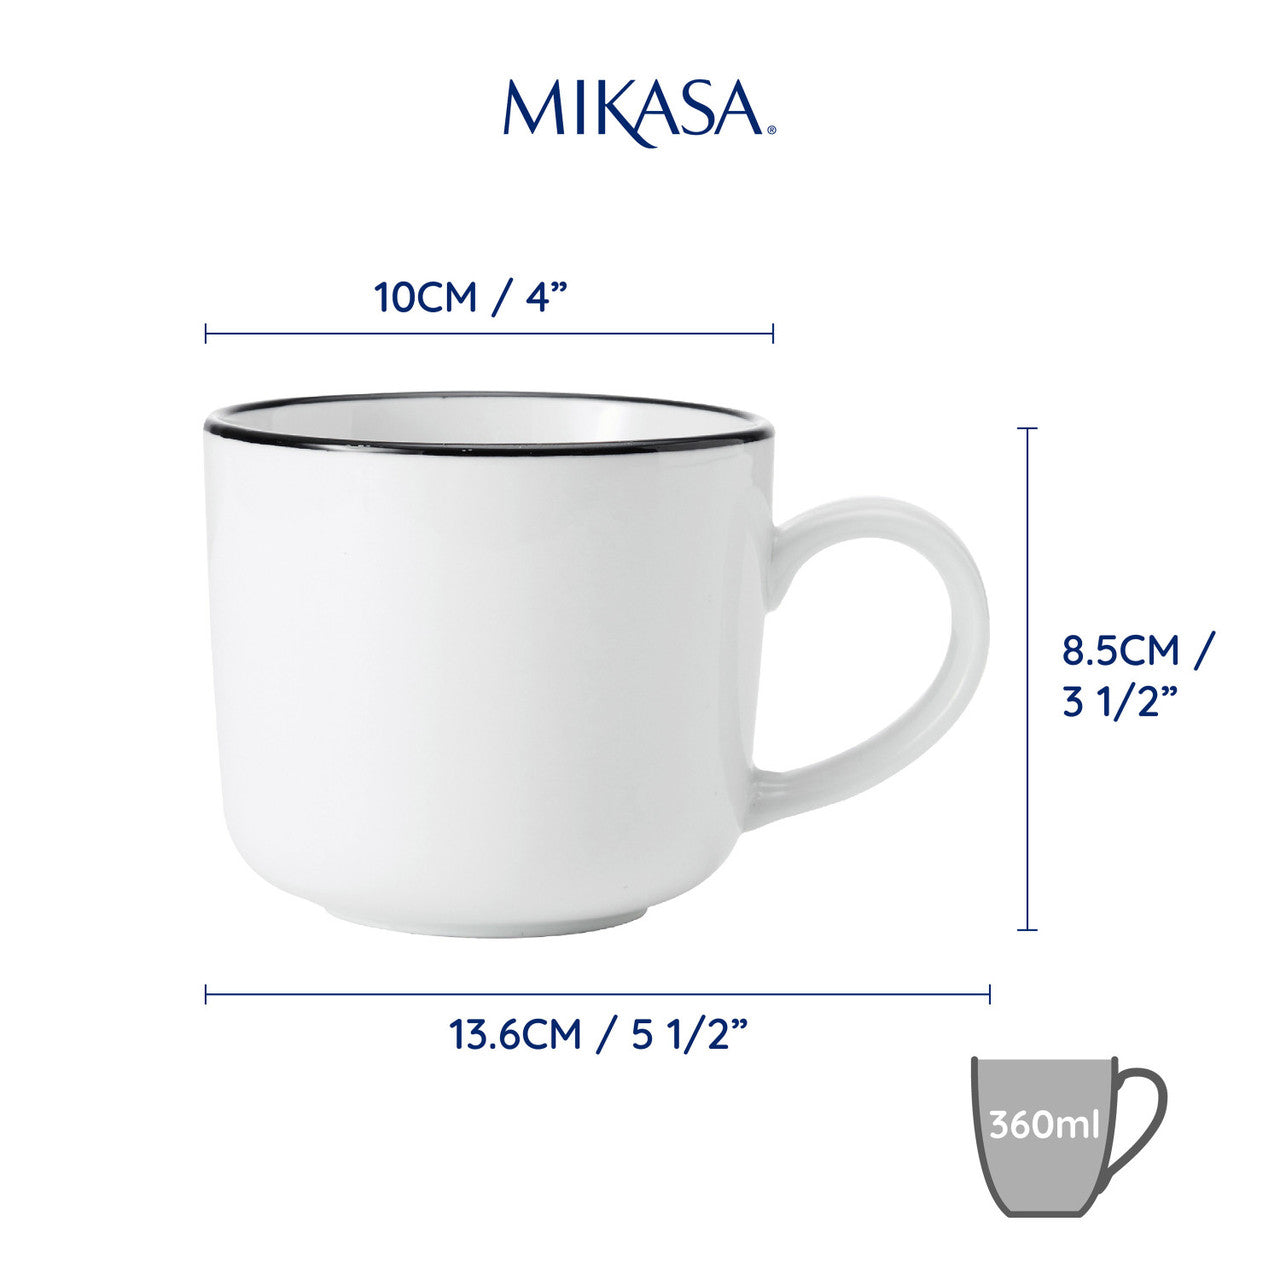 Mikasa Limestone Porcelain 4pc Mug Set 360ml White